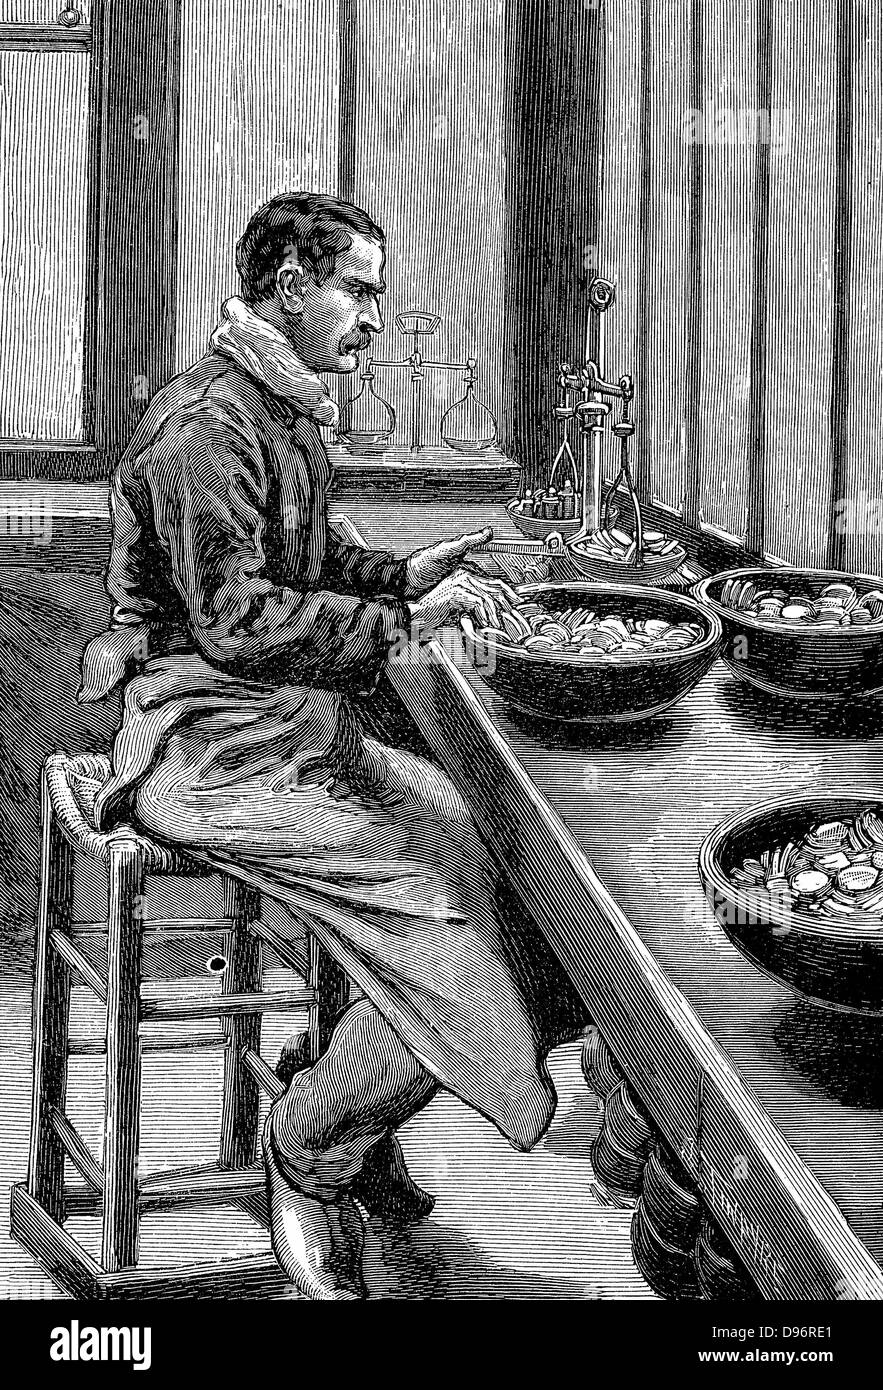 París: Pruebas de menta peso de piezas de oro. Grabado en madera 1892 Foto de stock